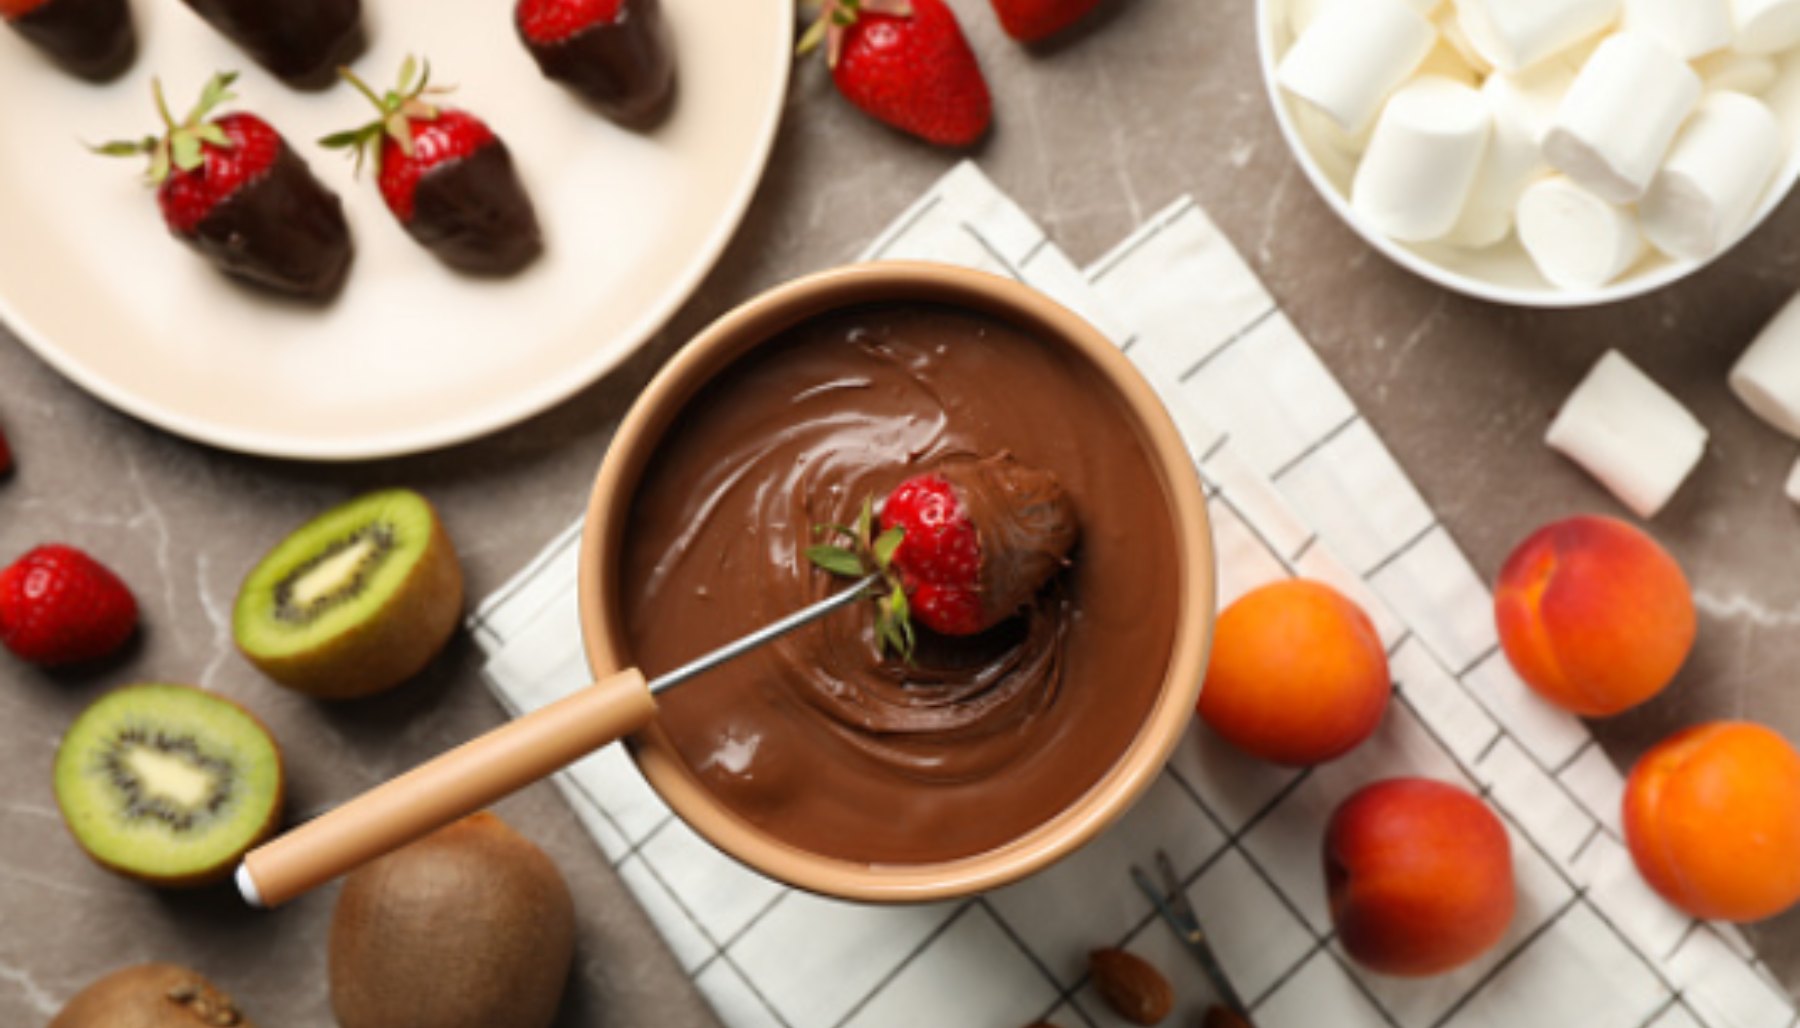 Receta de Fondue de chocolate: Una receta, mil posibilidades